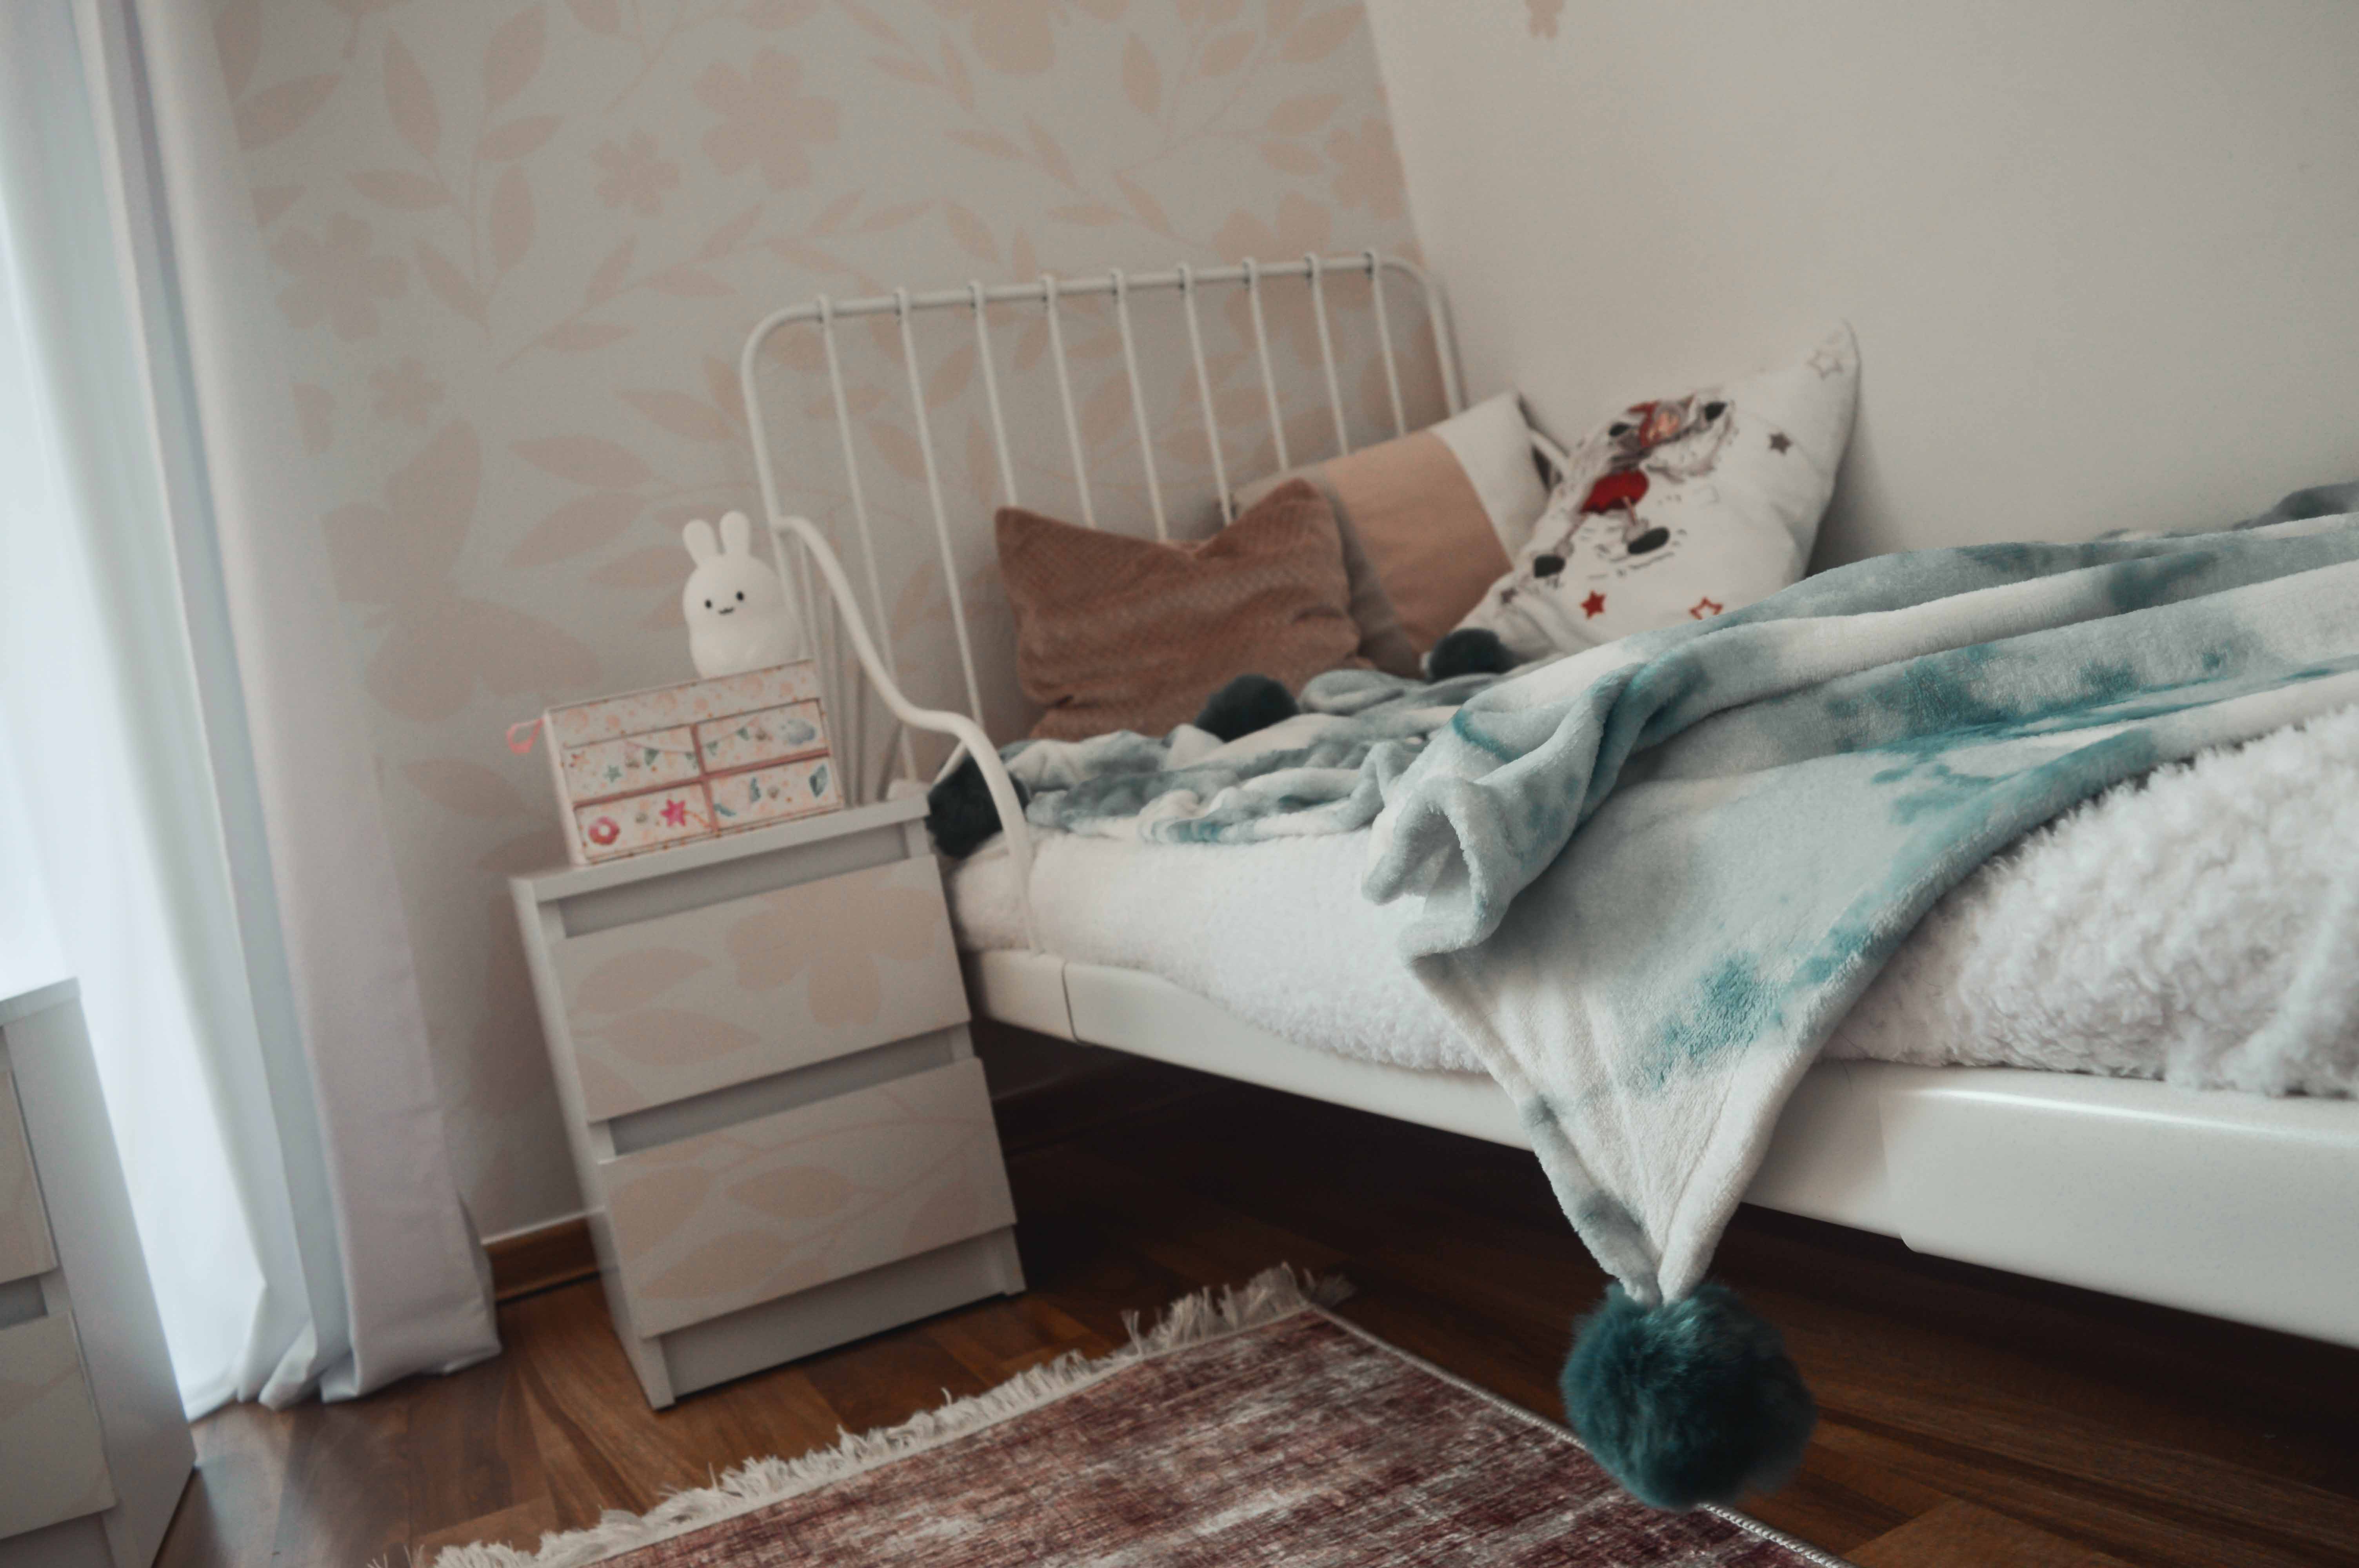 łóżko dla 6 latki - rozsuwane ikea minnen w wąskim pokoju